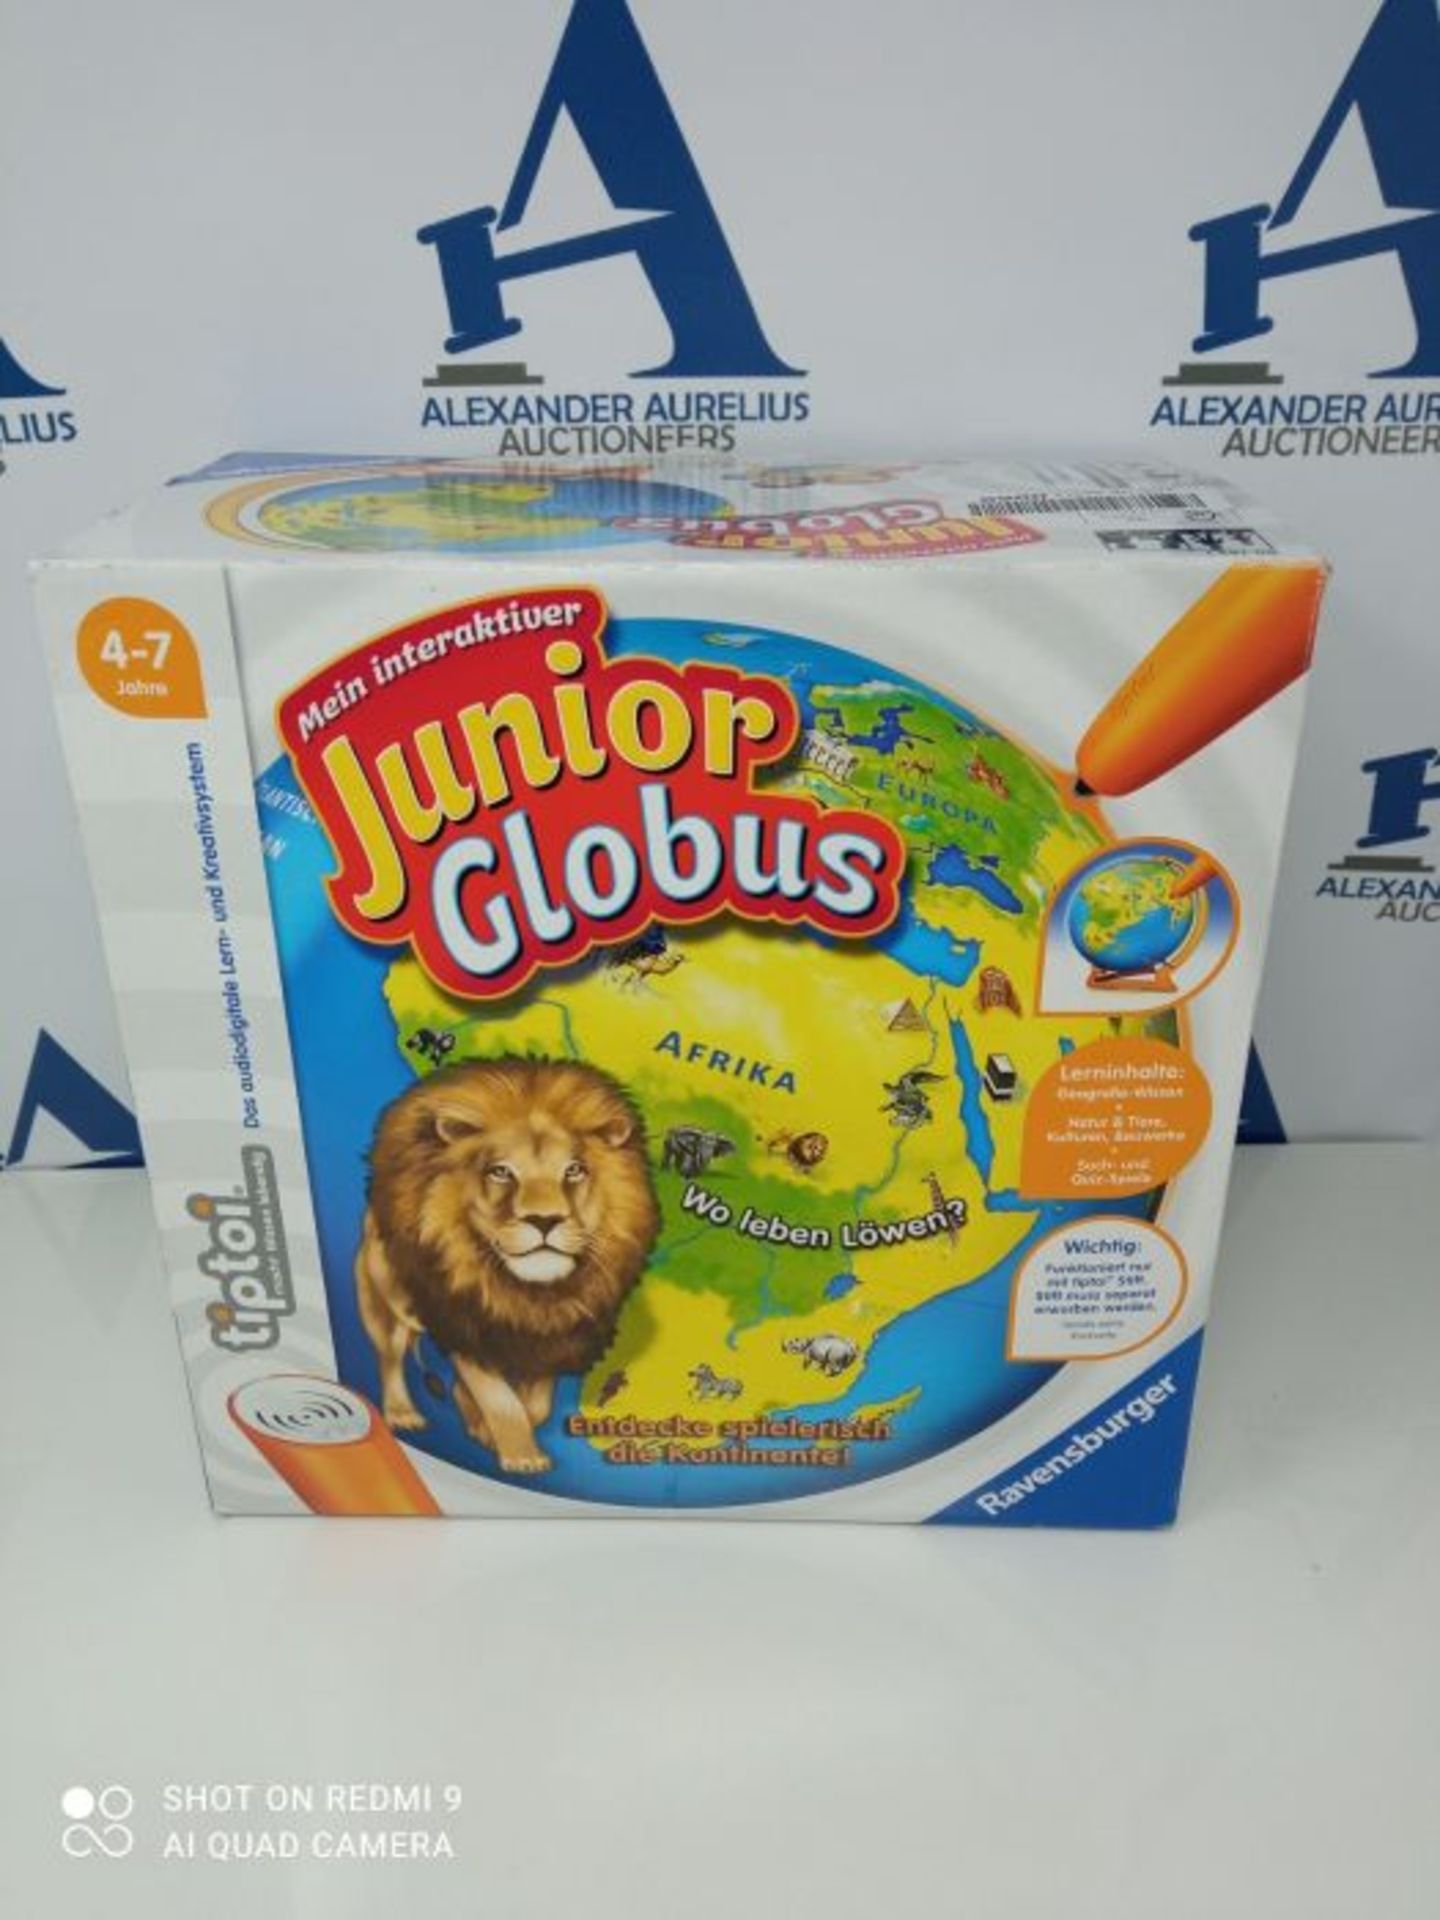 Ravensburger tiptoi 00785 - Mein interaktiver Junior Globus - Kinderspielzeug ab 4 Jah - Image 2 of 3